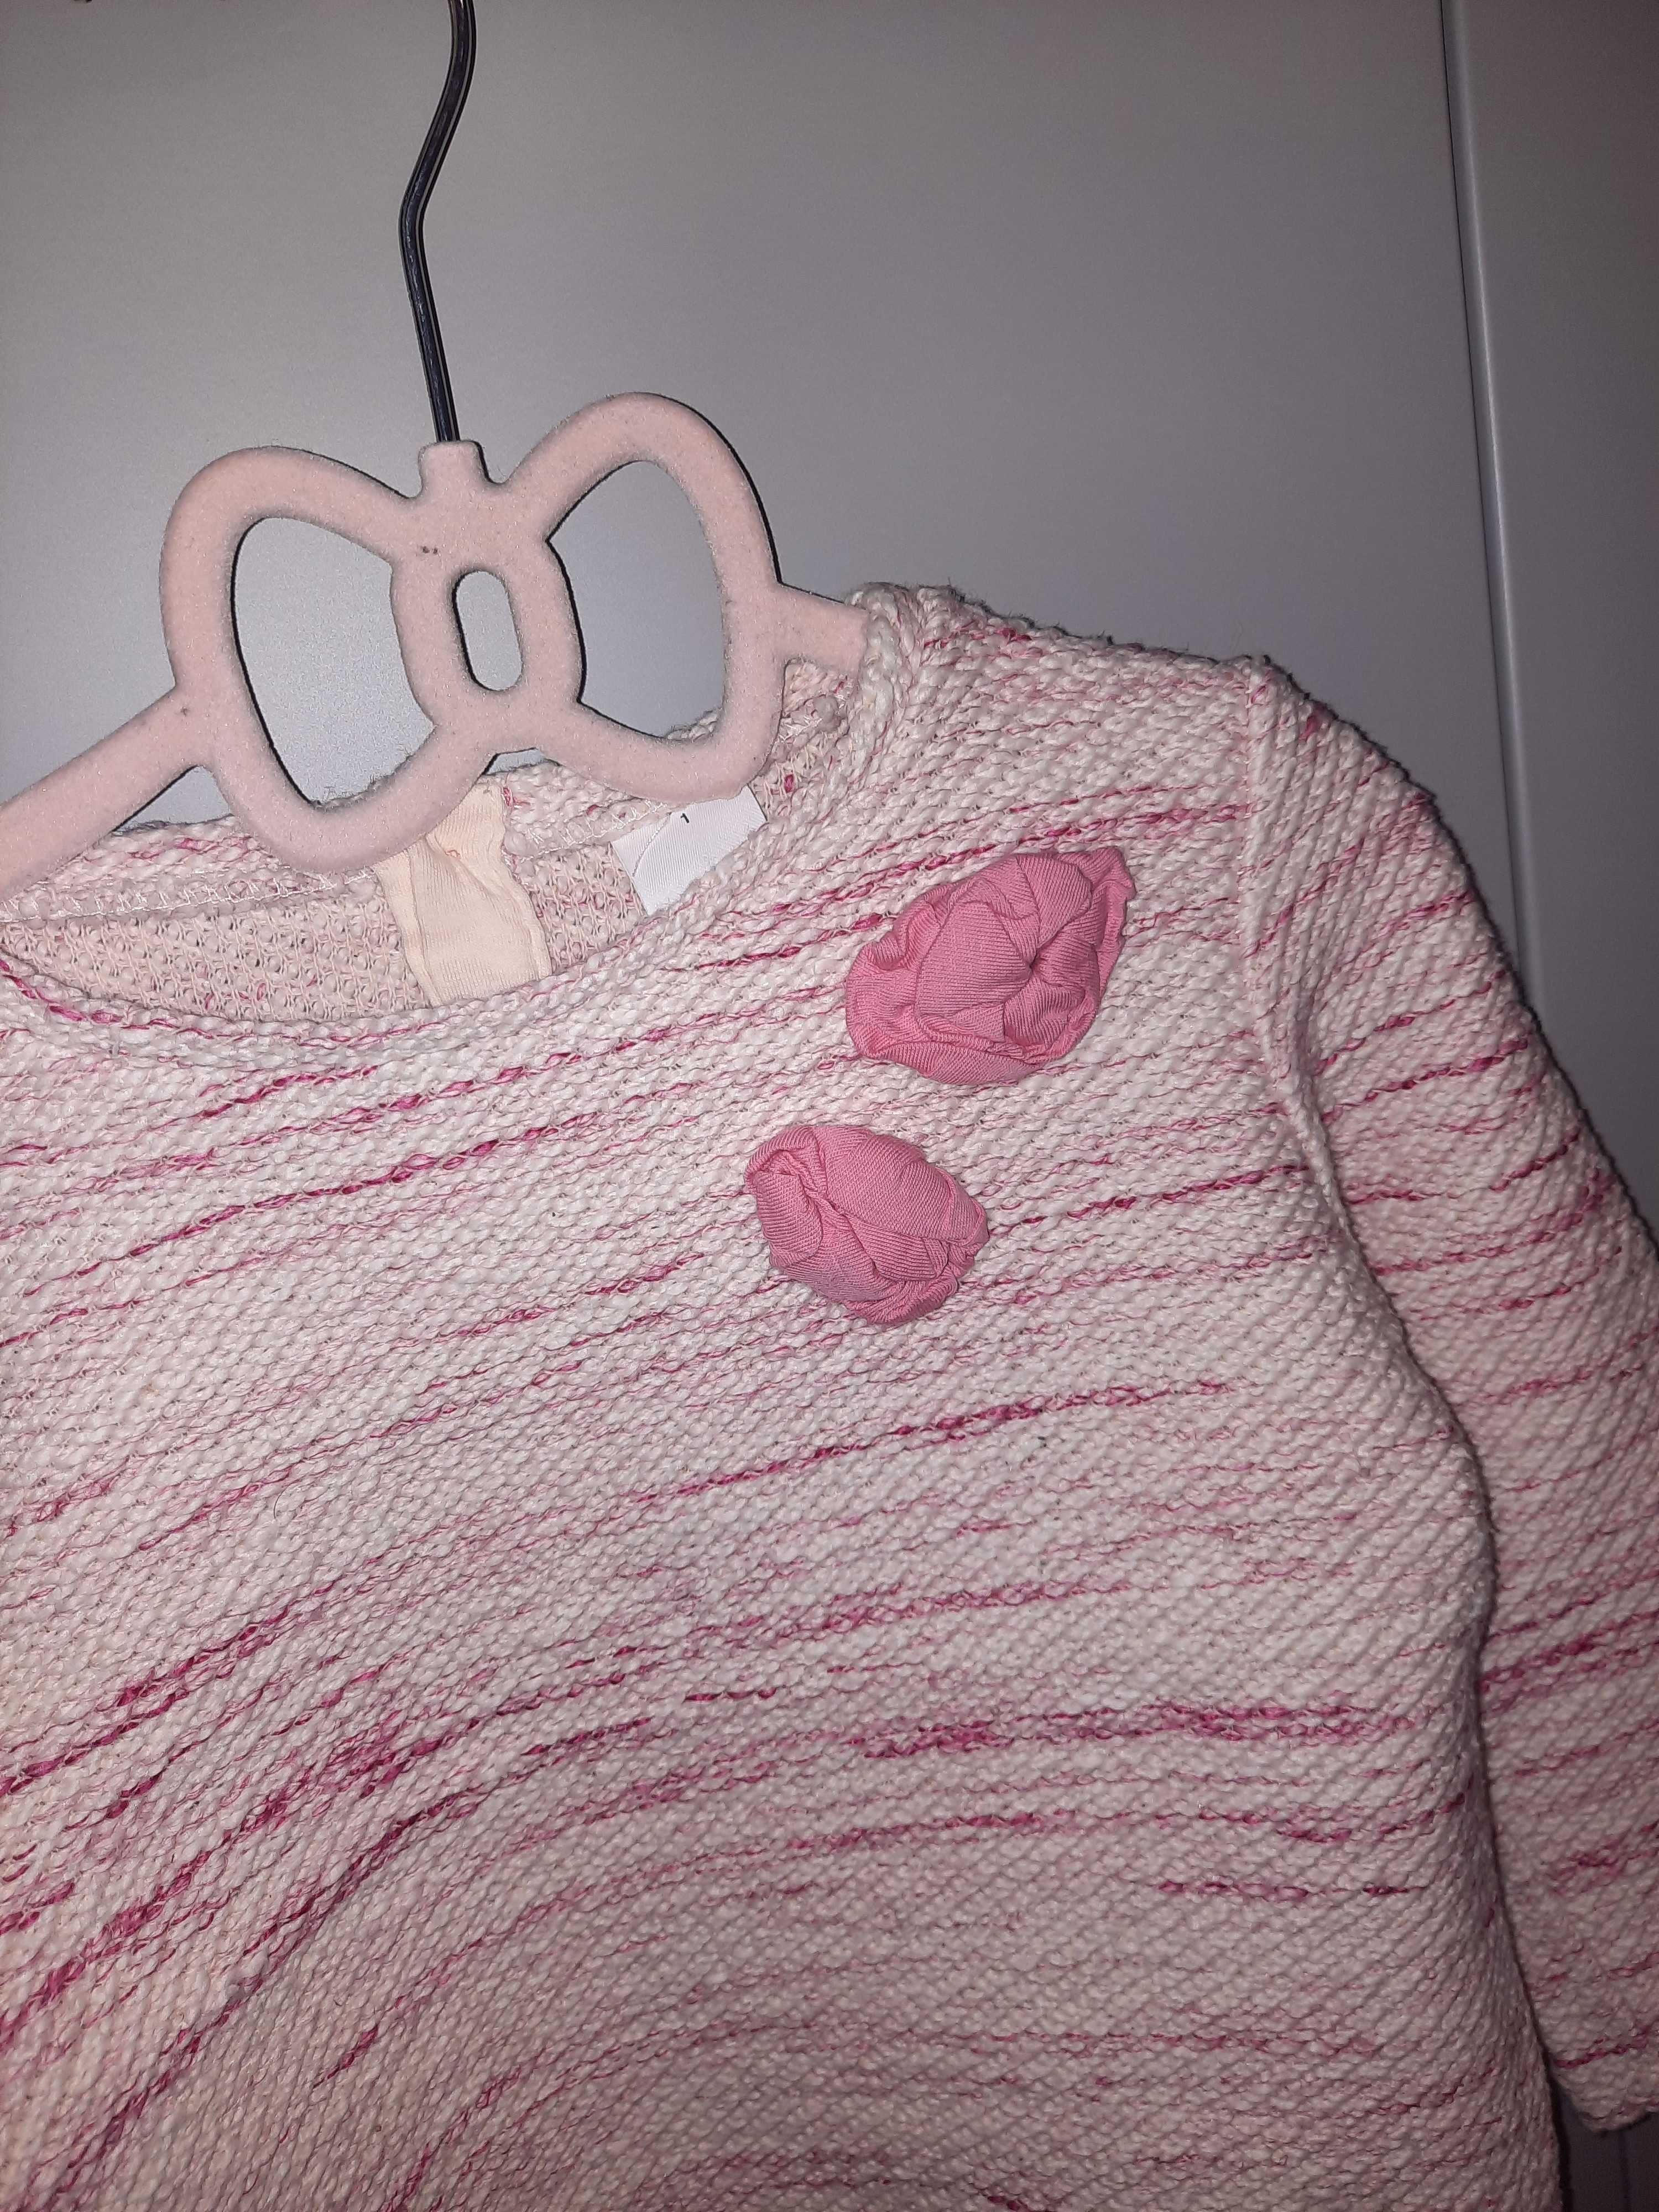 Bluza bluzka sweterek biało-różowy ozdobna kwiatki